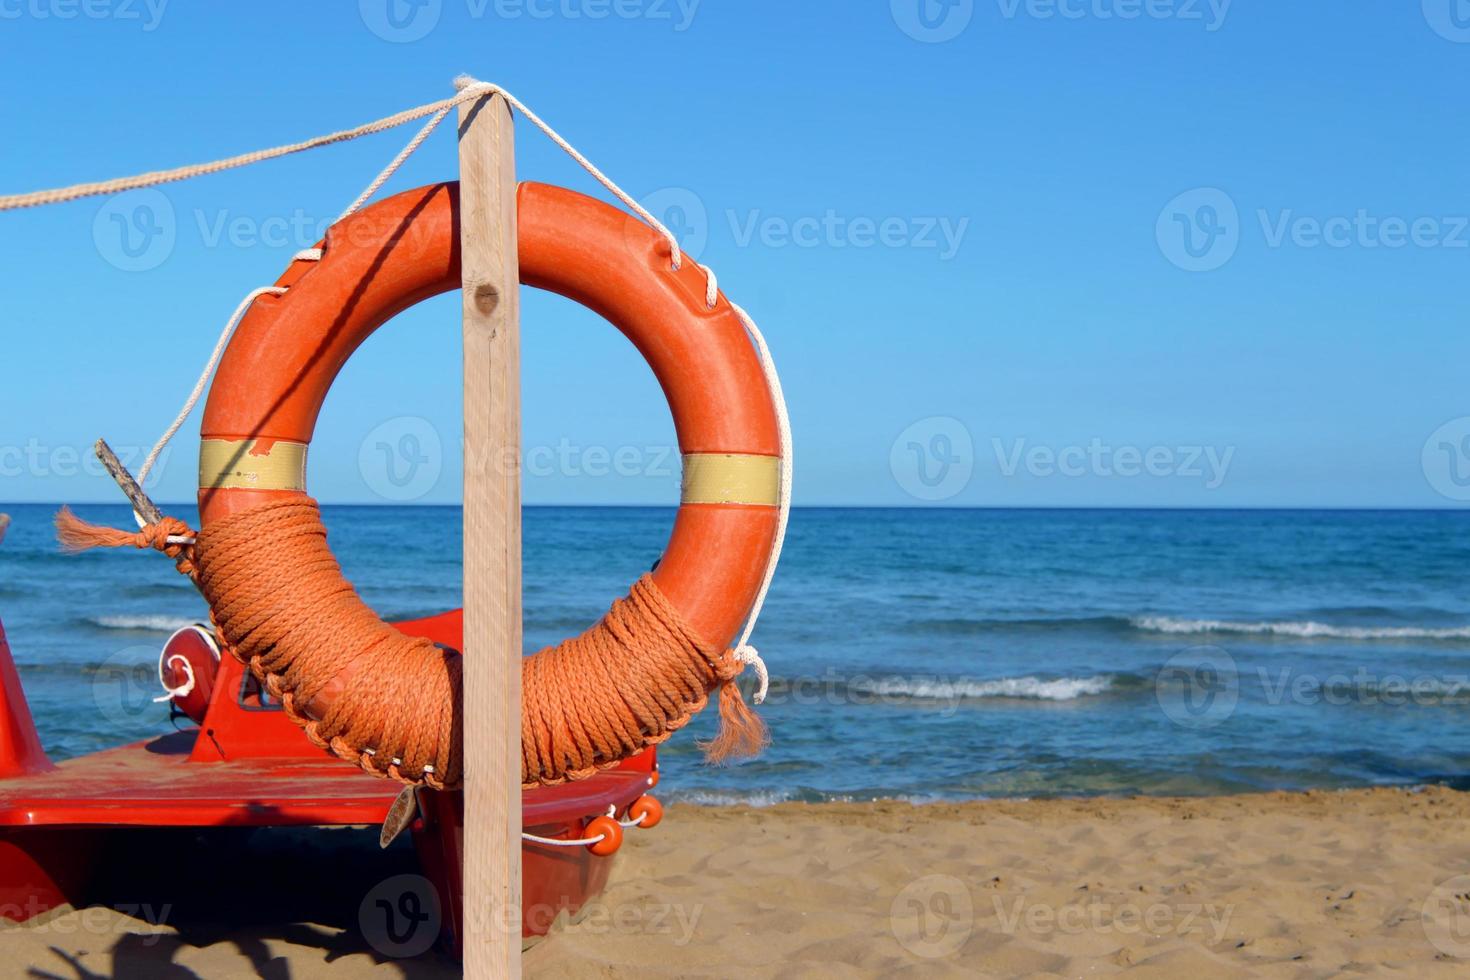 bouée de sauvetage en bord de mer. équipement de sauvetage de personnes. service de sauvetage.arbre avec gilet de sauvetage orange sur la plage au bord de la mer.paysage marin avec, avec ciel bleu et plage de sable. photo